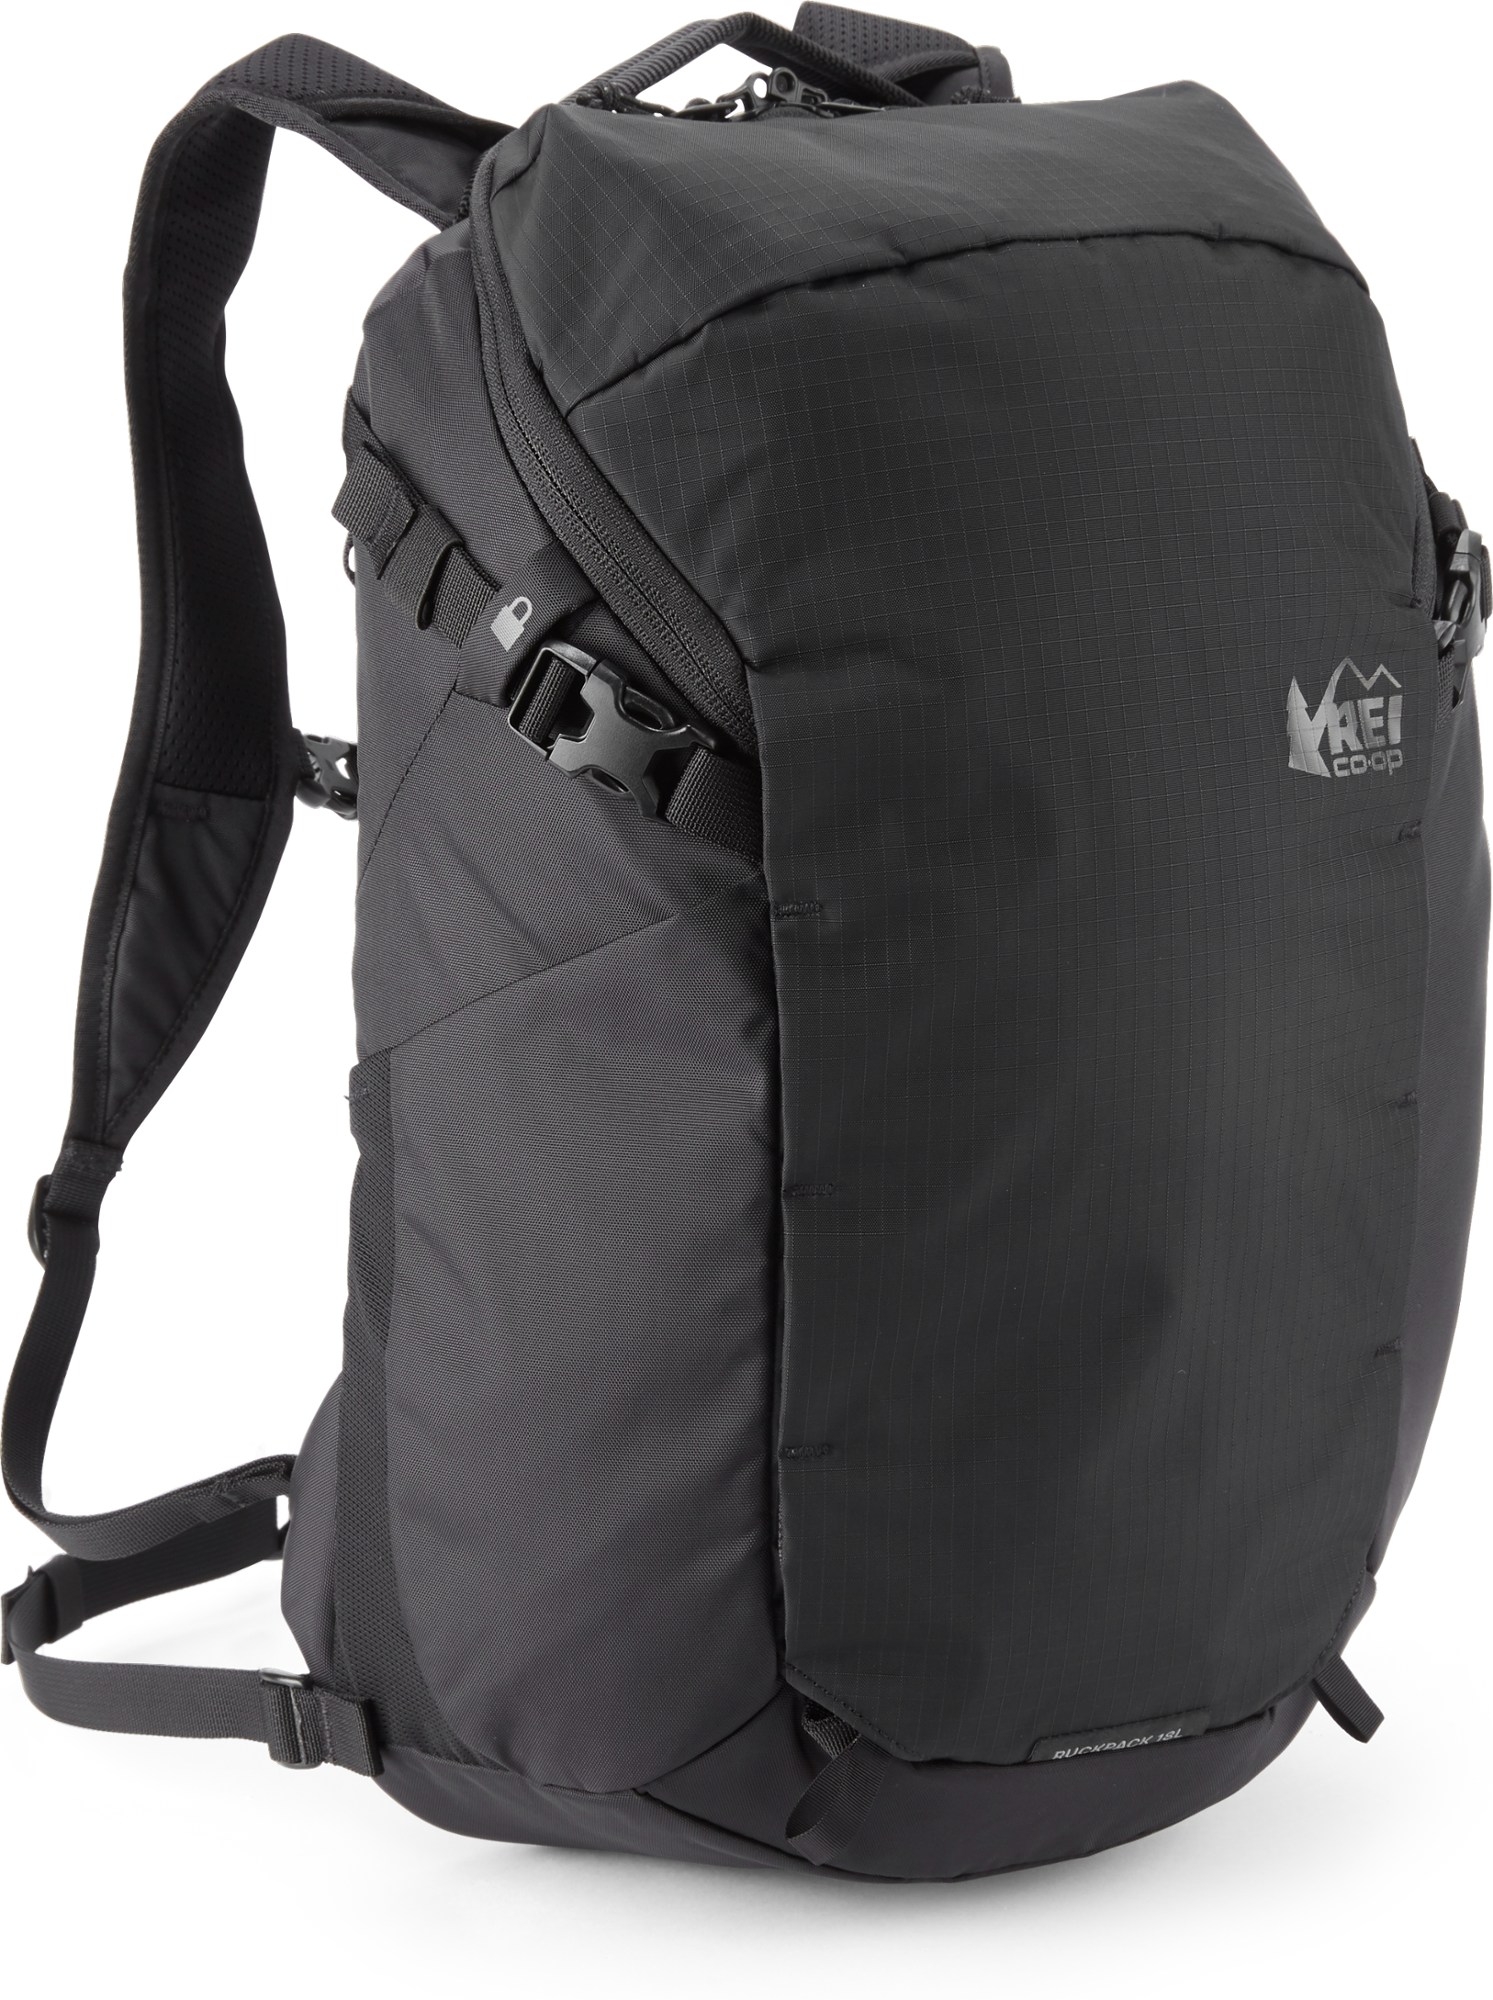 Рюкзак Ruckpack 18 из переработанного материала REI Co-op, черный рюкзак туристический airport синий 18 л